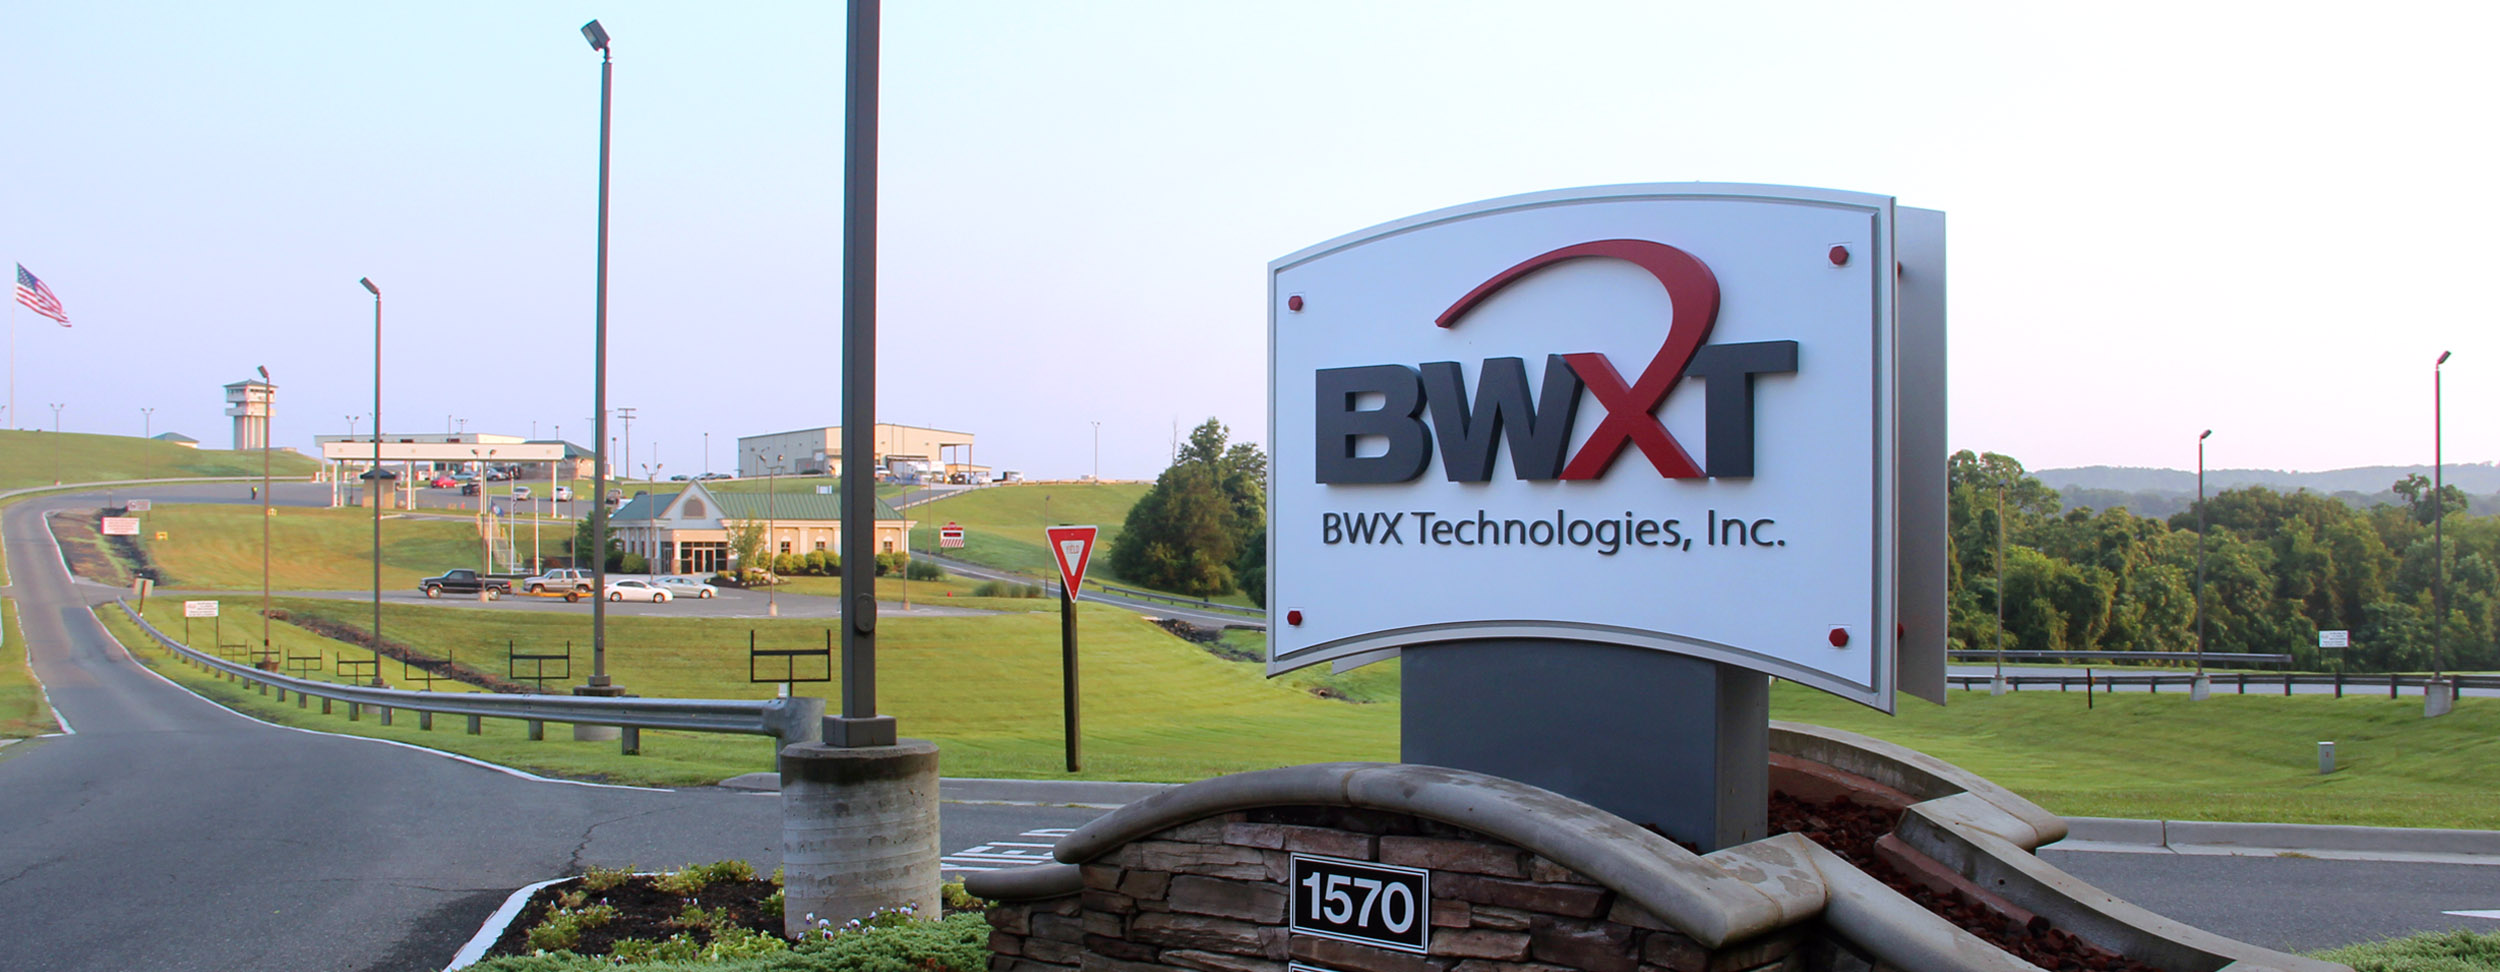 BWXT facility sign